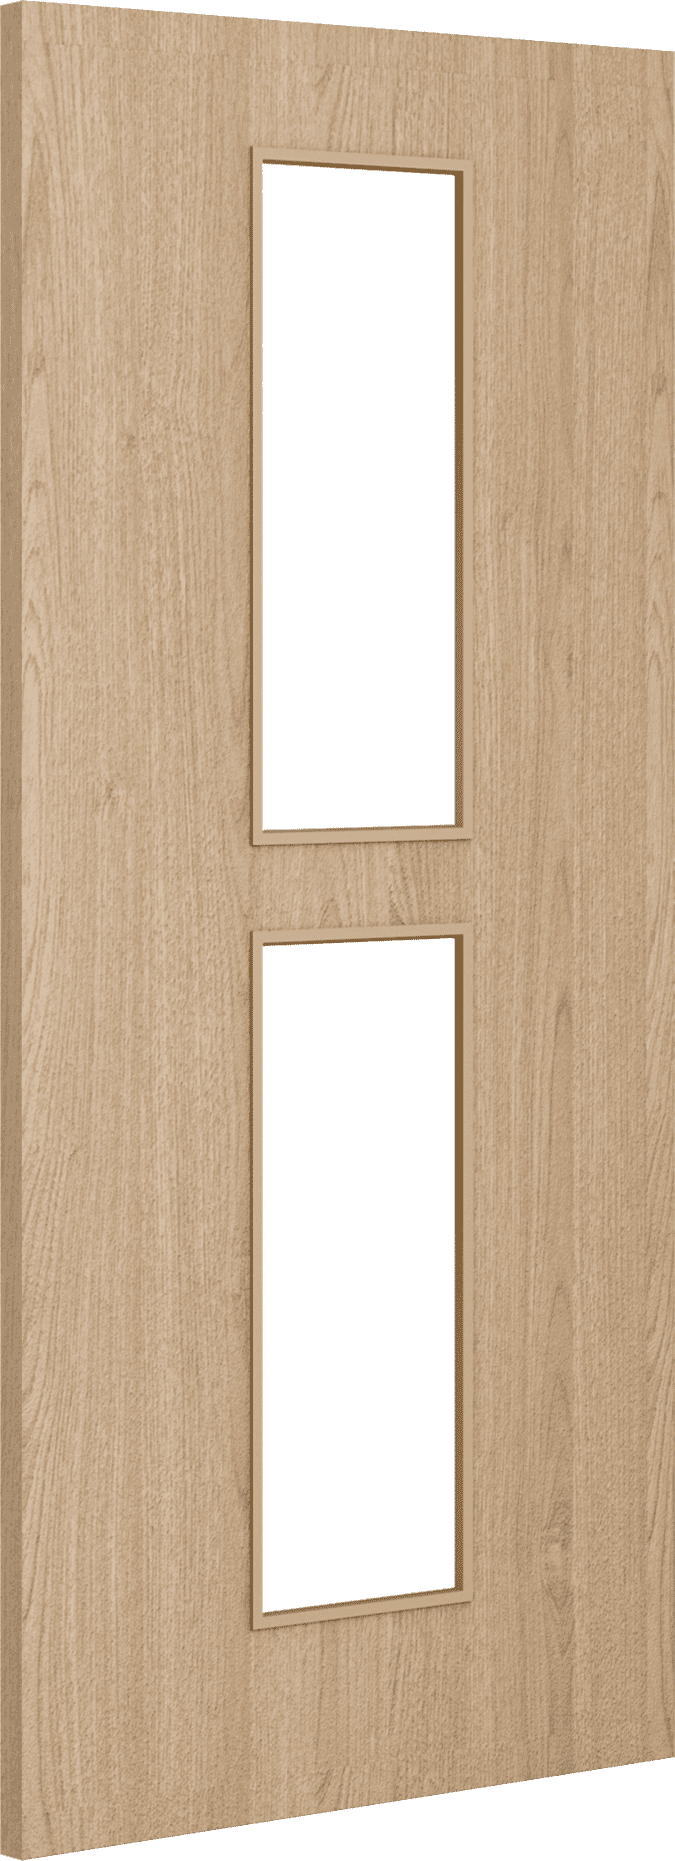 2040mm x 526mm x 44mm Architectural Oak 12 Clear Glazed - Prefinished FD30 Fire Door Blank